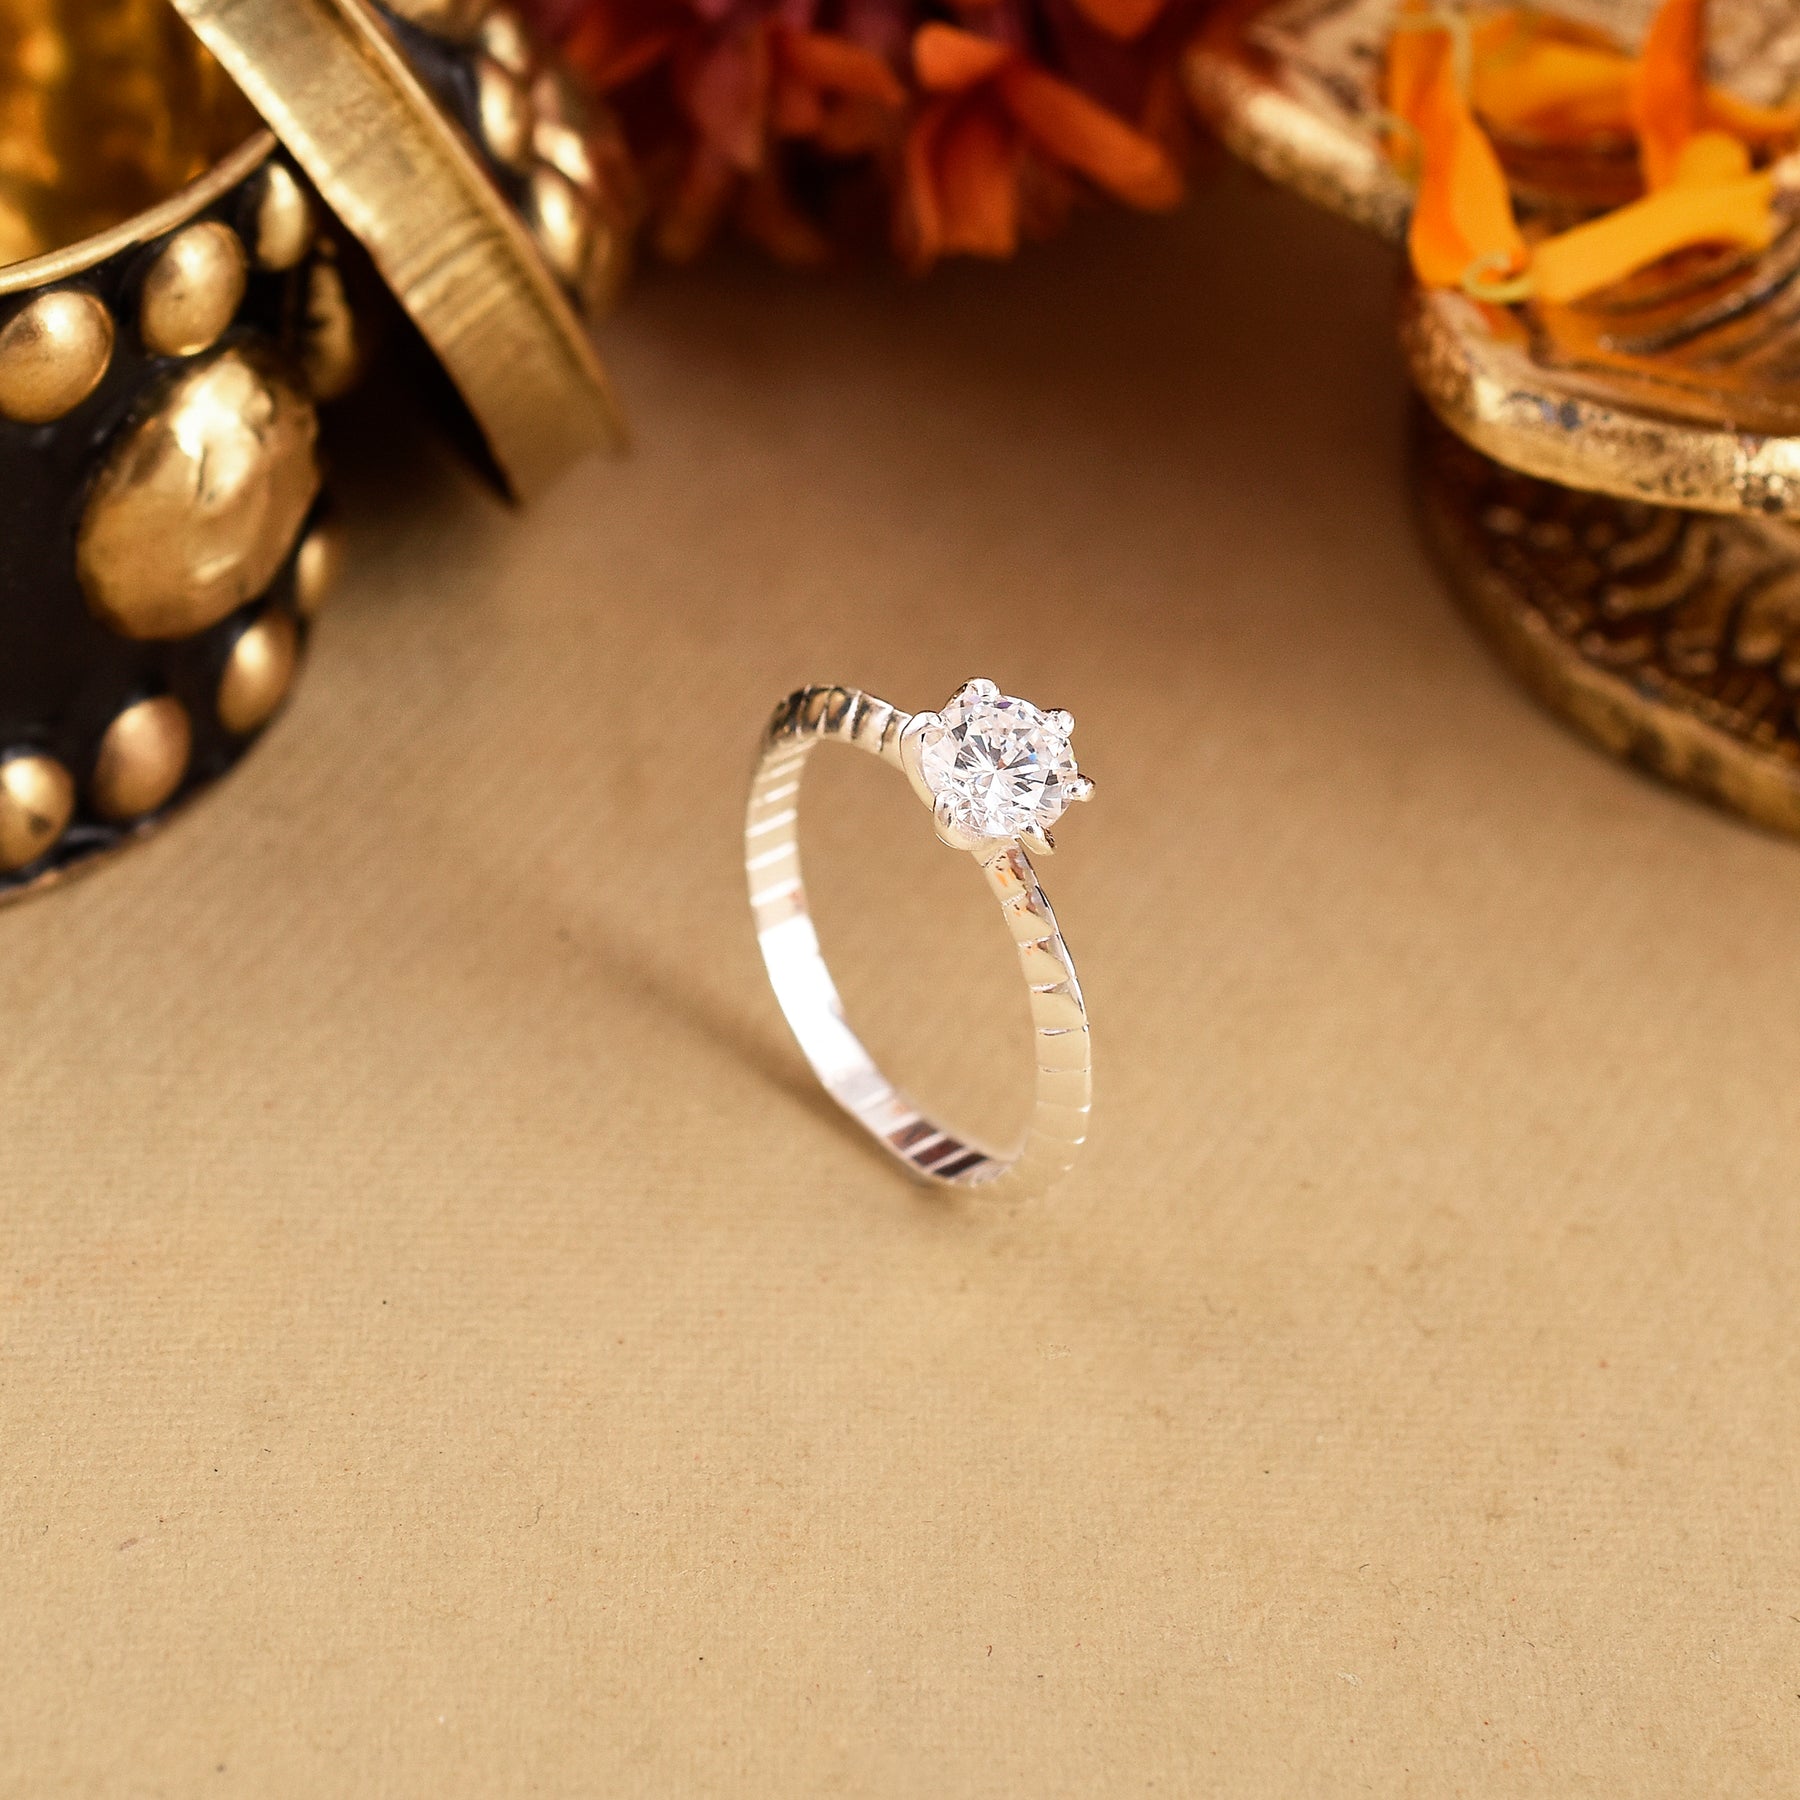 Petite Flower Pearl Stud Earrings with Ring Set